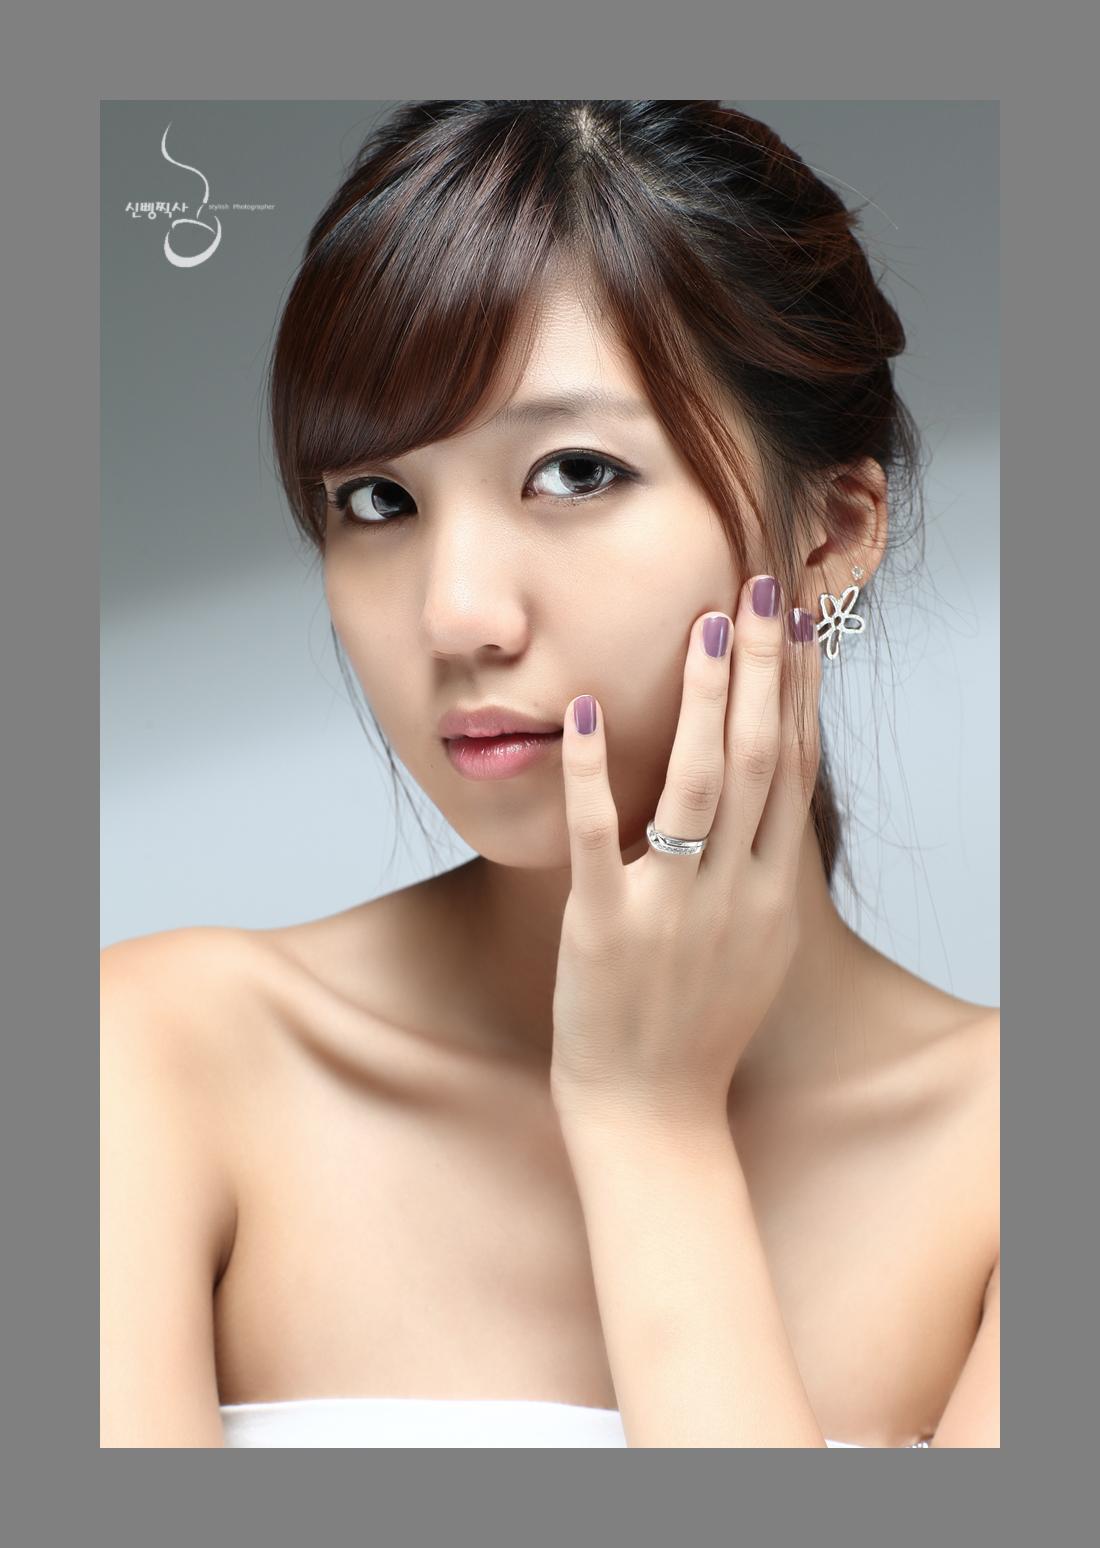 Download this Han Eun Cute Korean Model picture